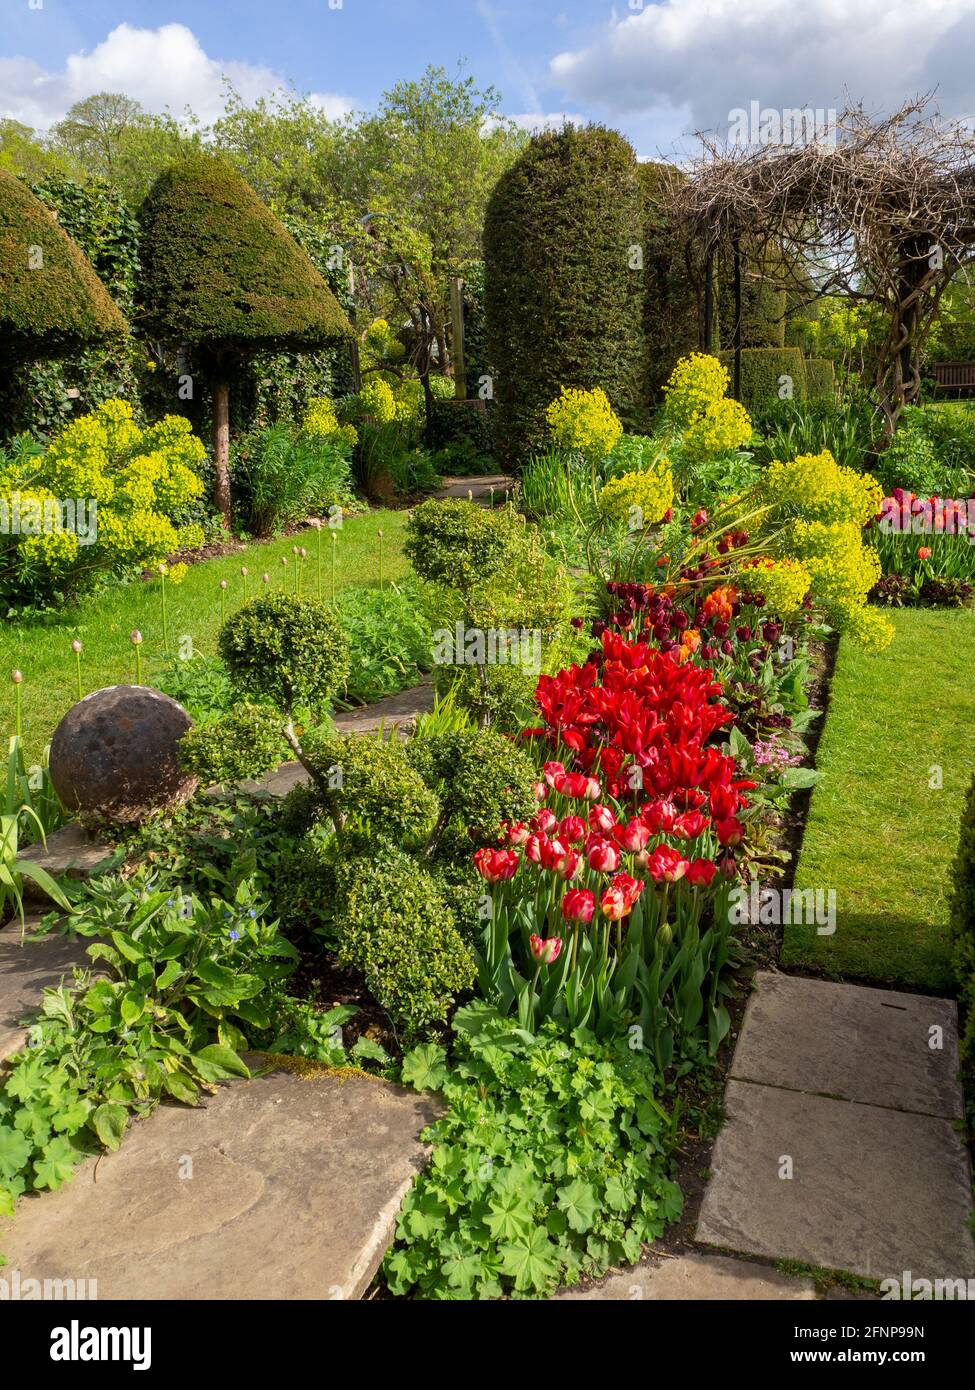 Una sezione del giardino Chenies Manor durante il festival dei tulipani a Springtime. Tulipani rossi luminosi, topiario, percorso erba at.Chenies, 2021 Foto Stock